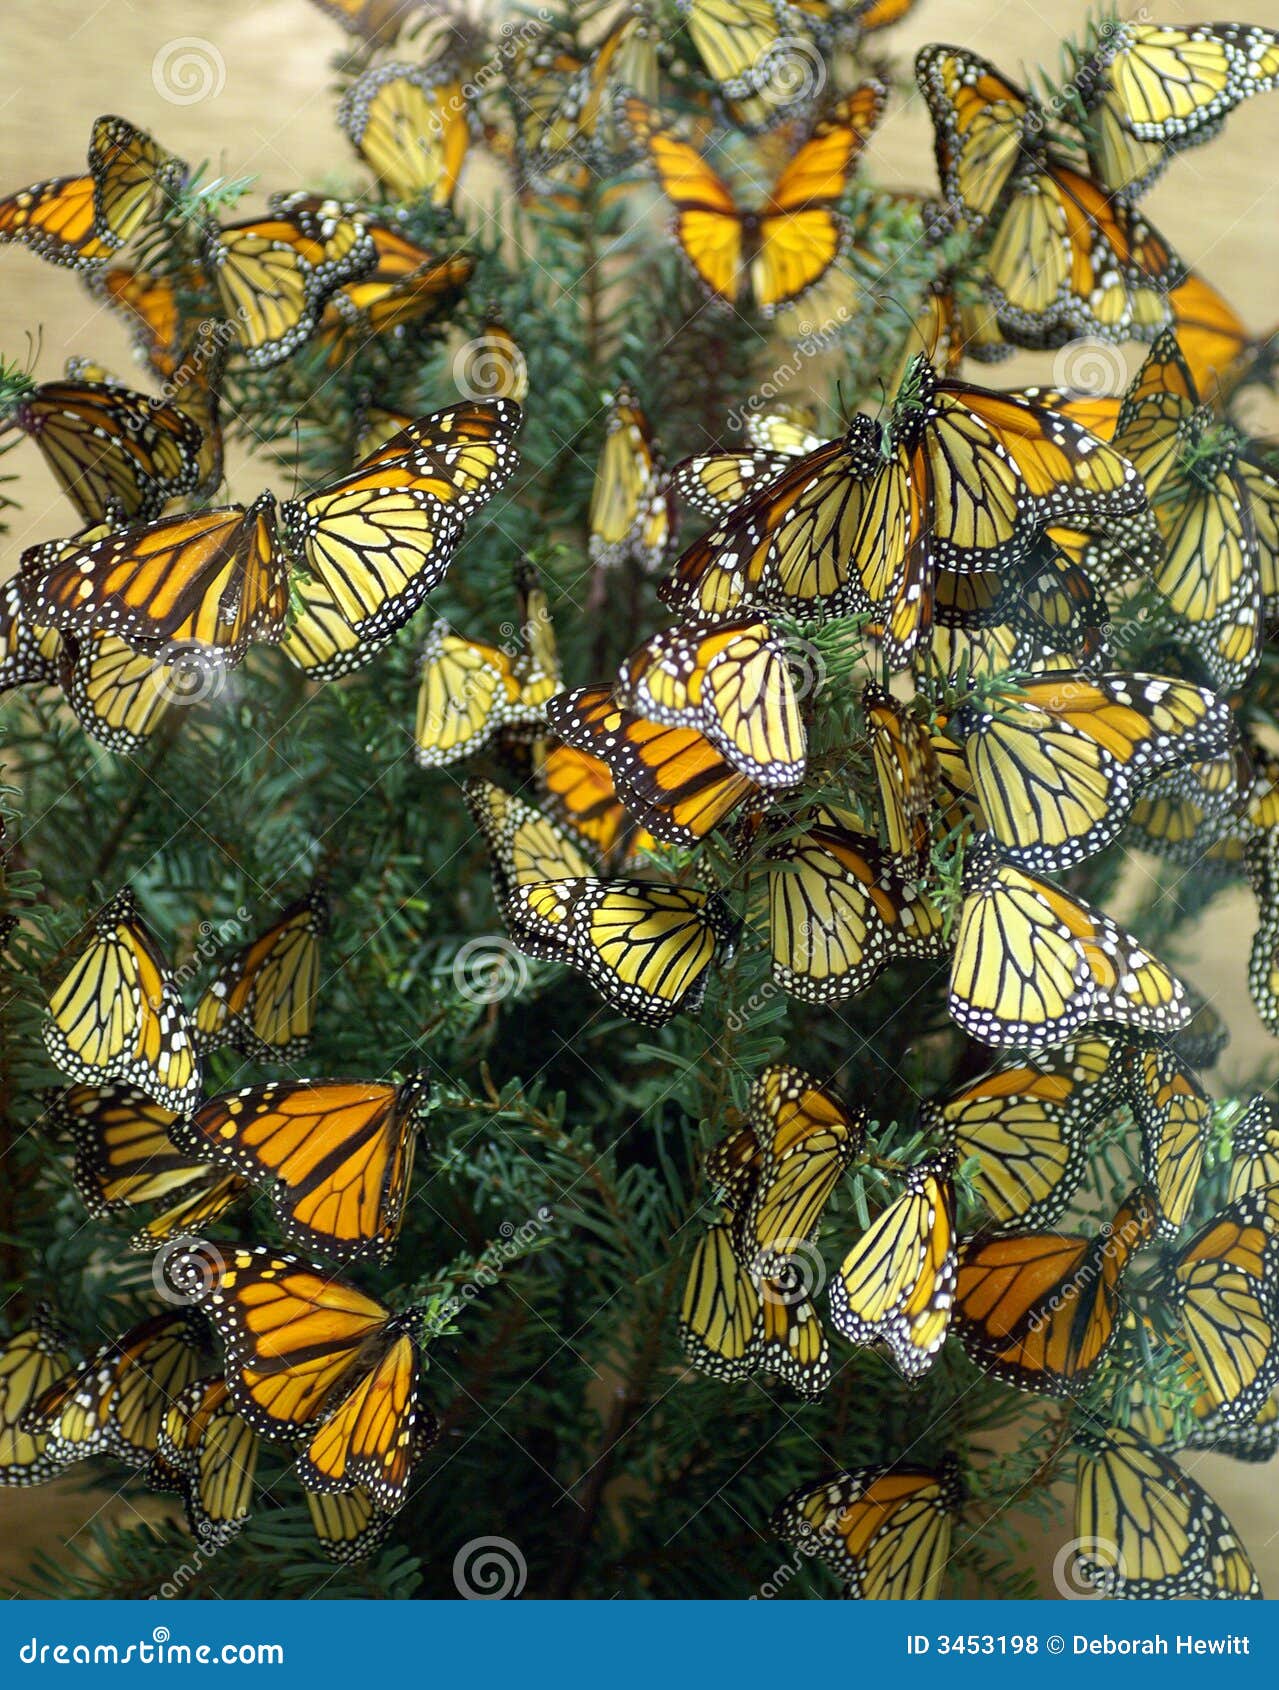 monarch butterflies diorama